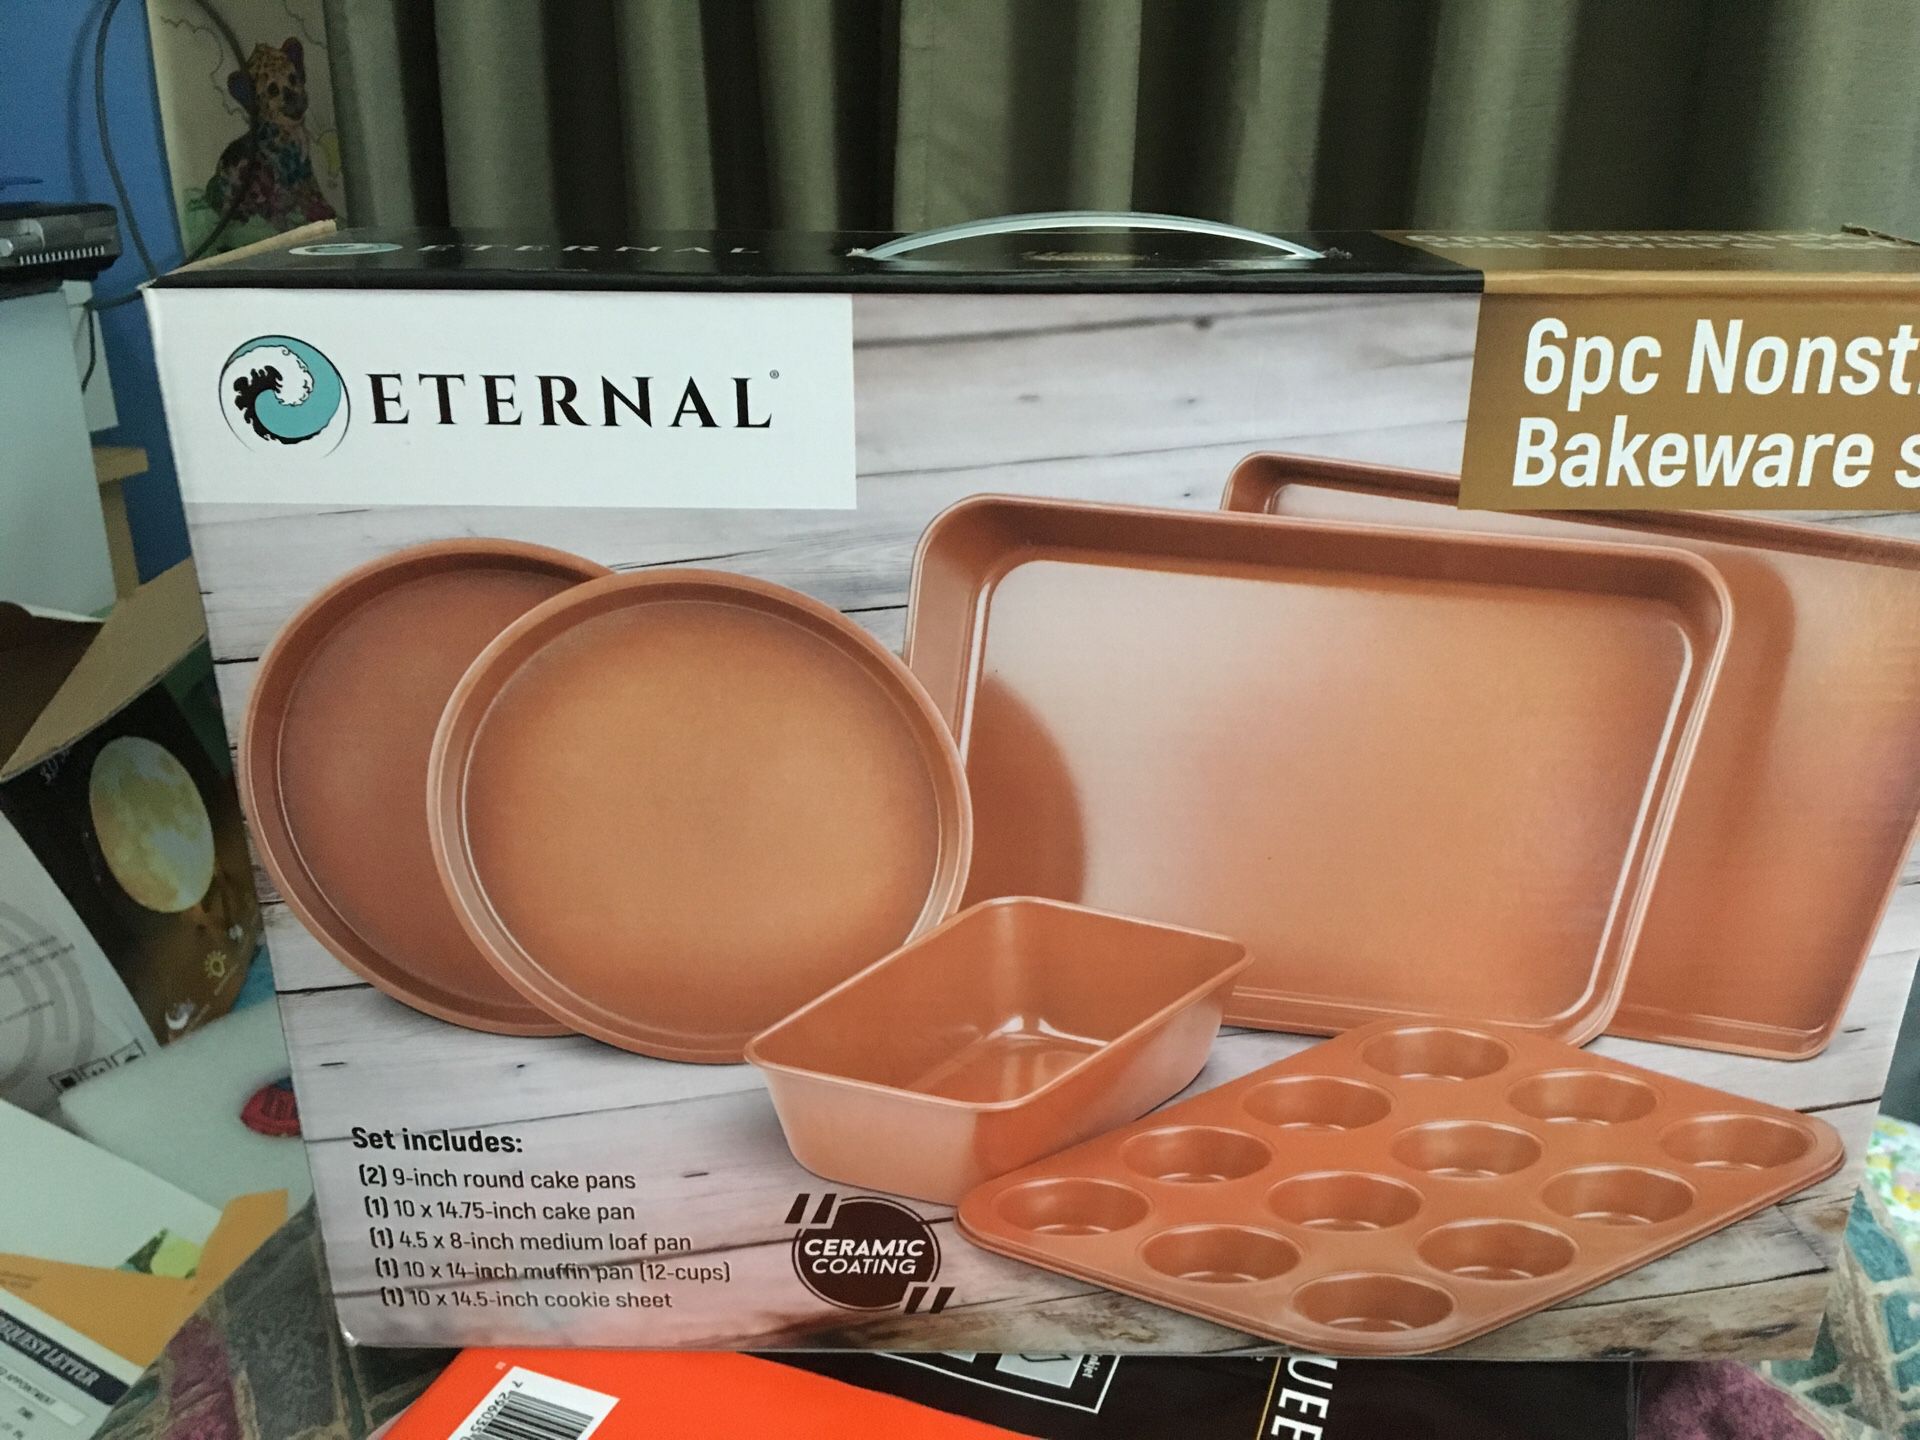 Eternal 6pc Nonstick Bakeware Set